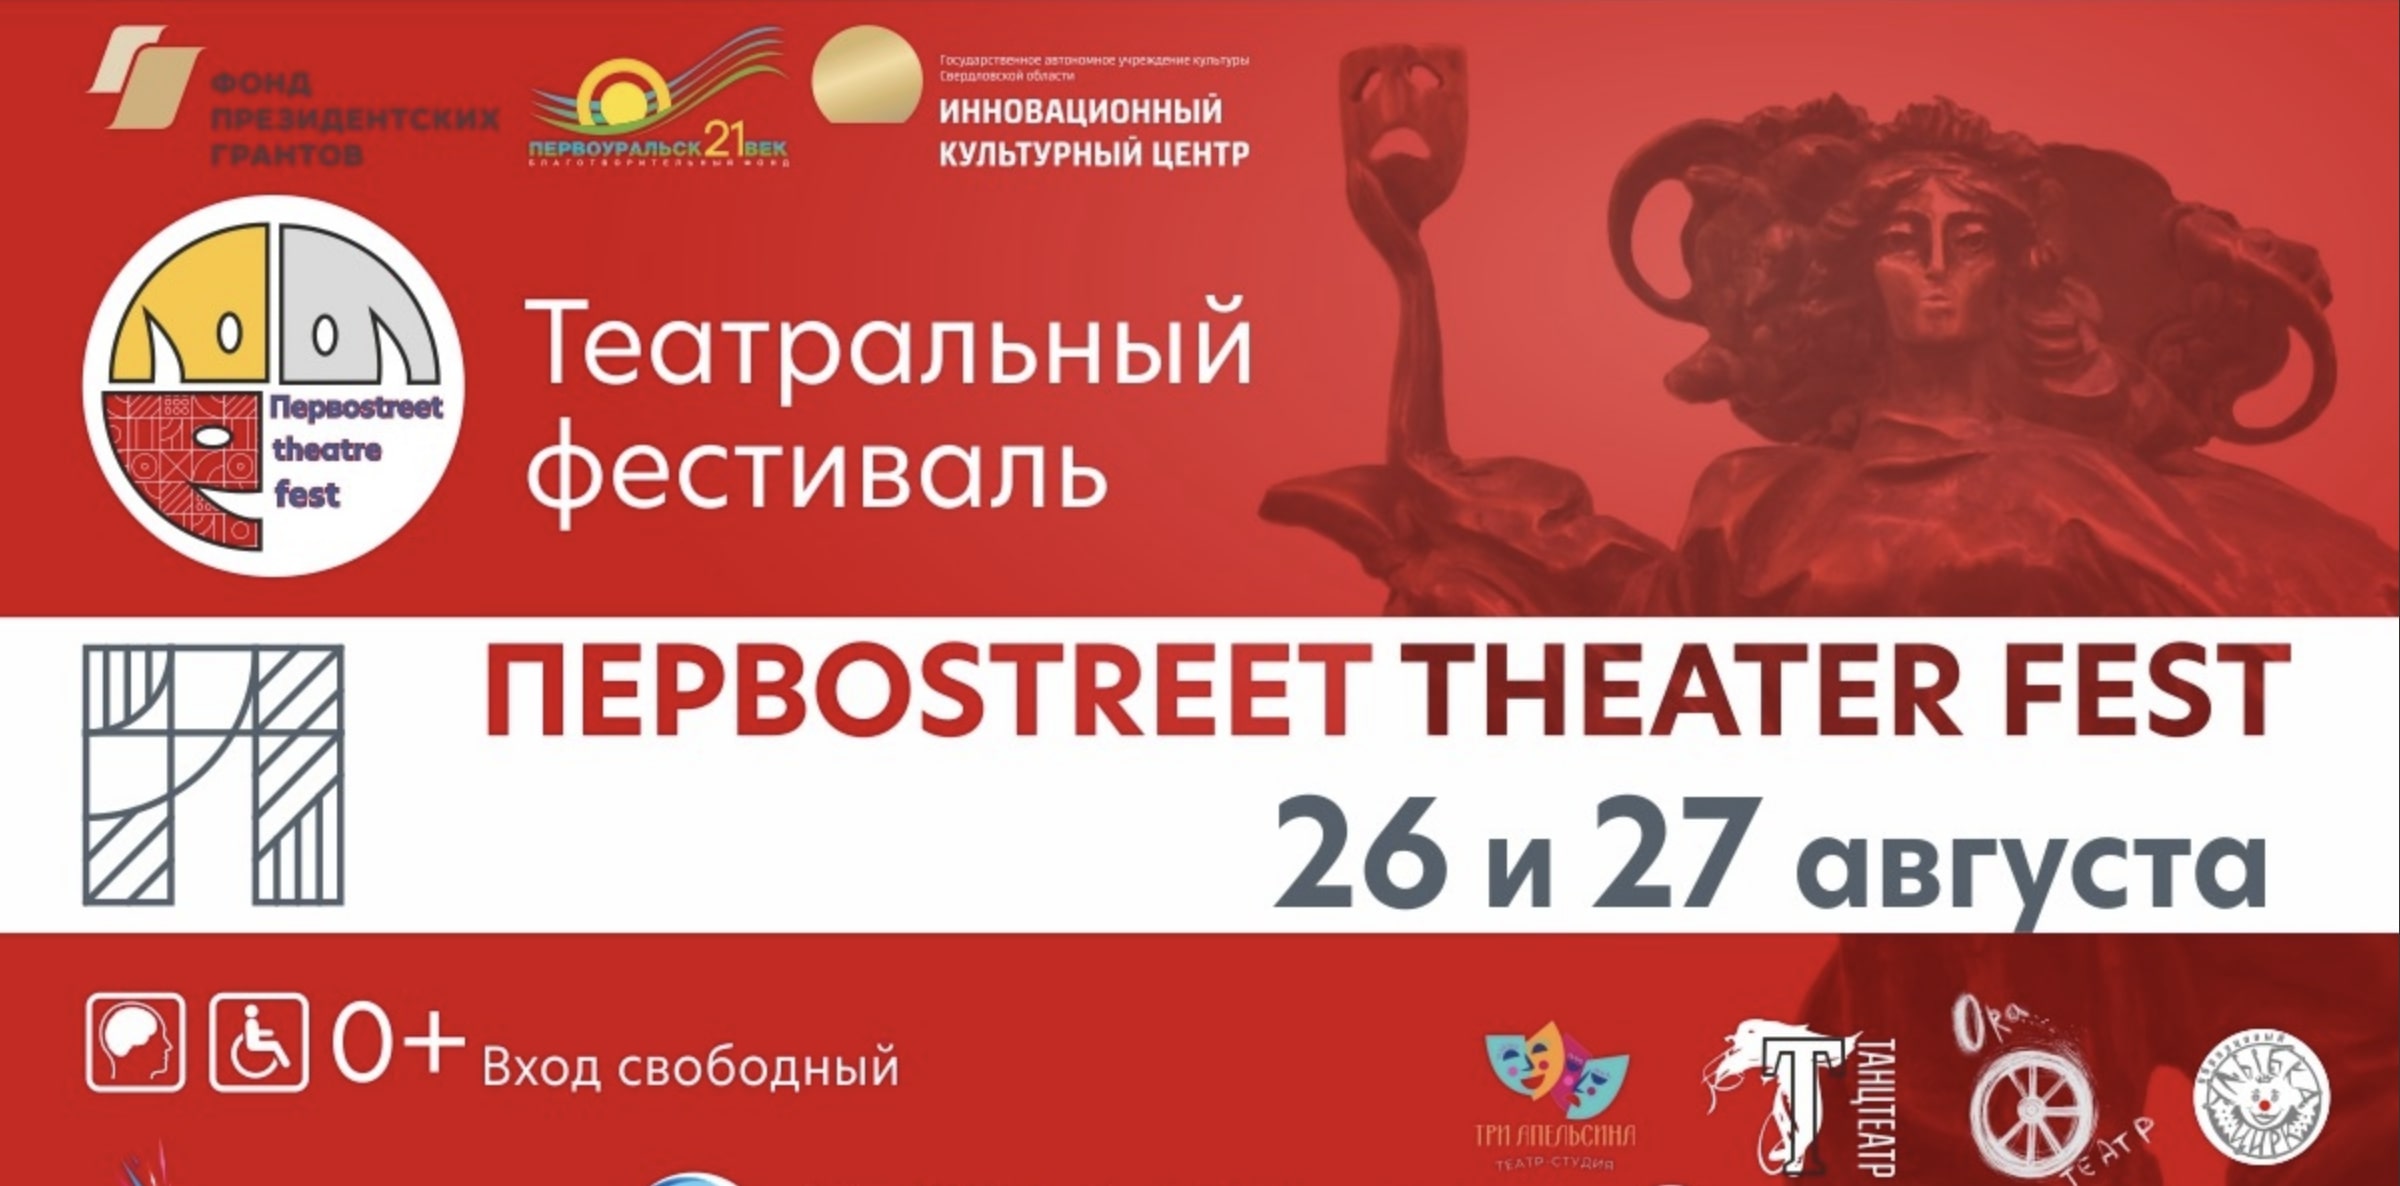 В Первоуральске пройдет фестиваль Первоstreet theater fest